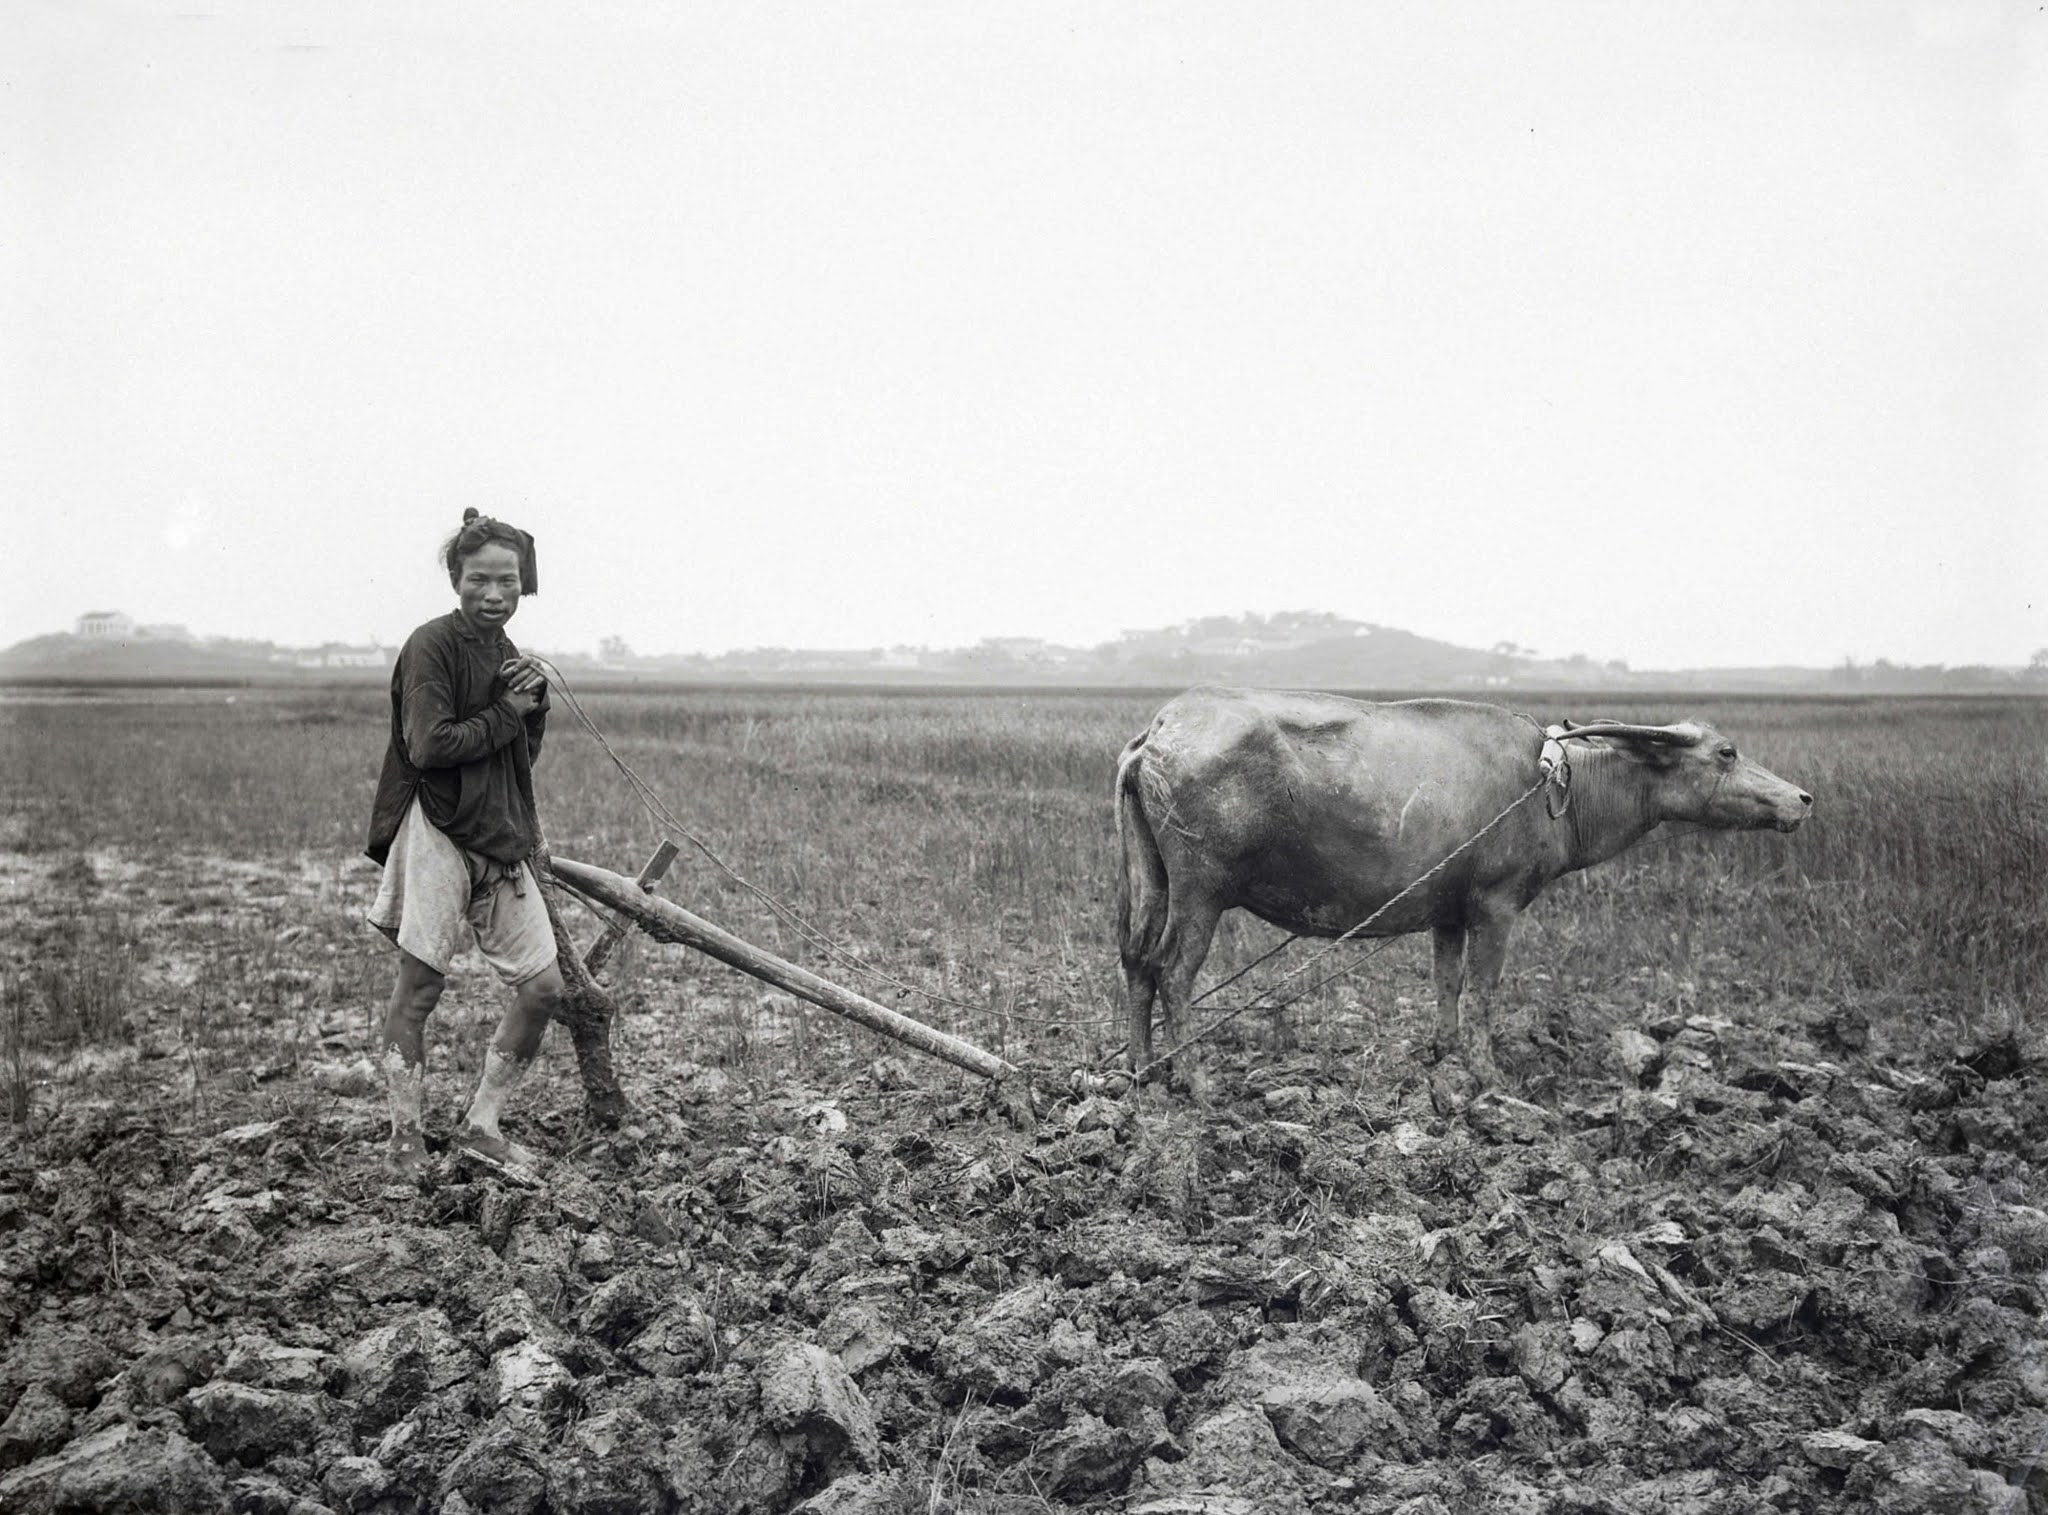 Hình ảnh con trâu ở nông thôn Việt trong tranh ảnh đầu thế kỷ 20